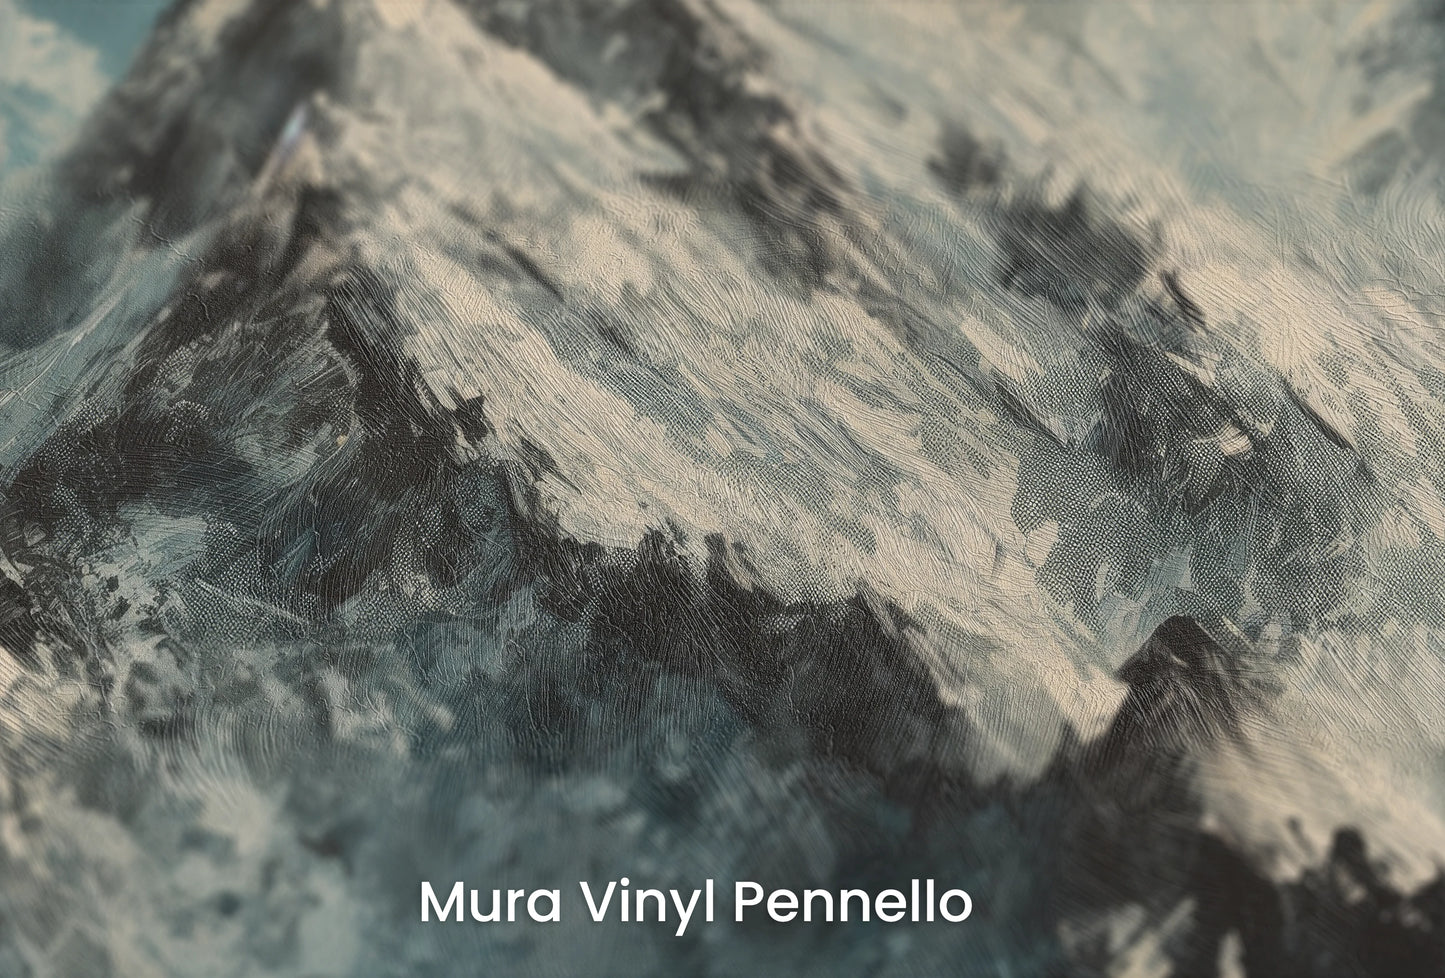 Zbliżenie na artystyczną fototapetę o nazwie Misty Mountain Mystery na podłożu Mura Vinyl Pennello - faktura pociągnięć pędzla malarskiego.